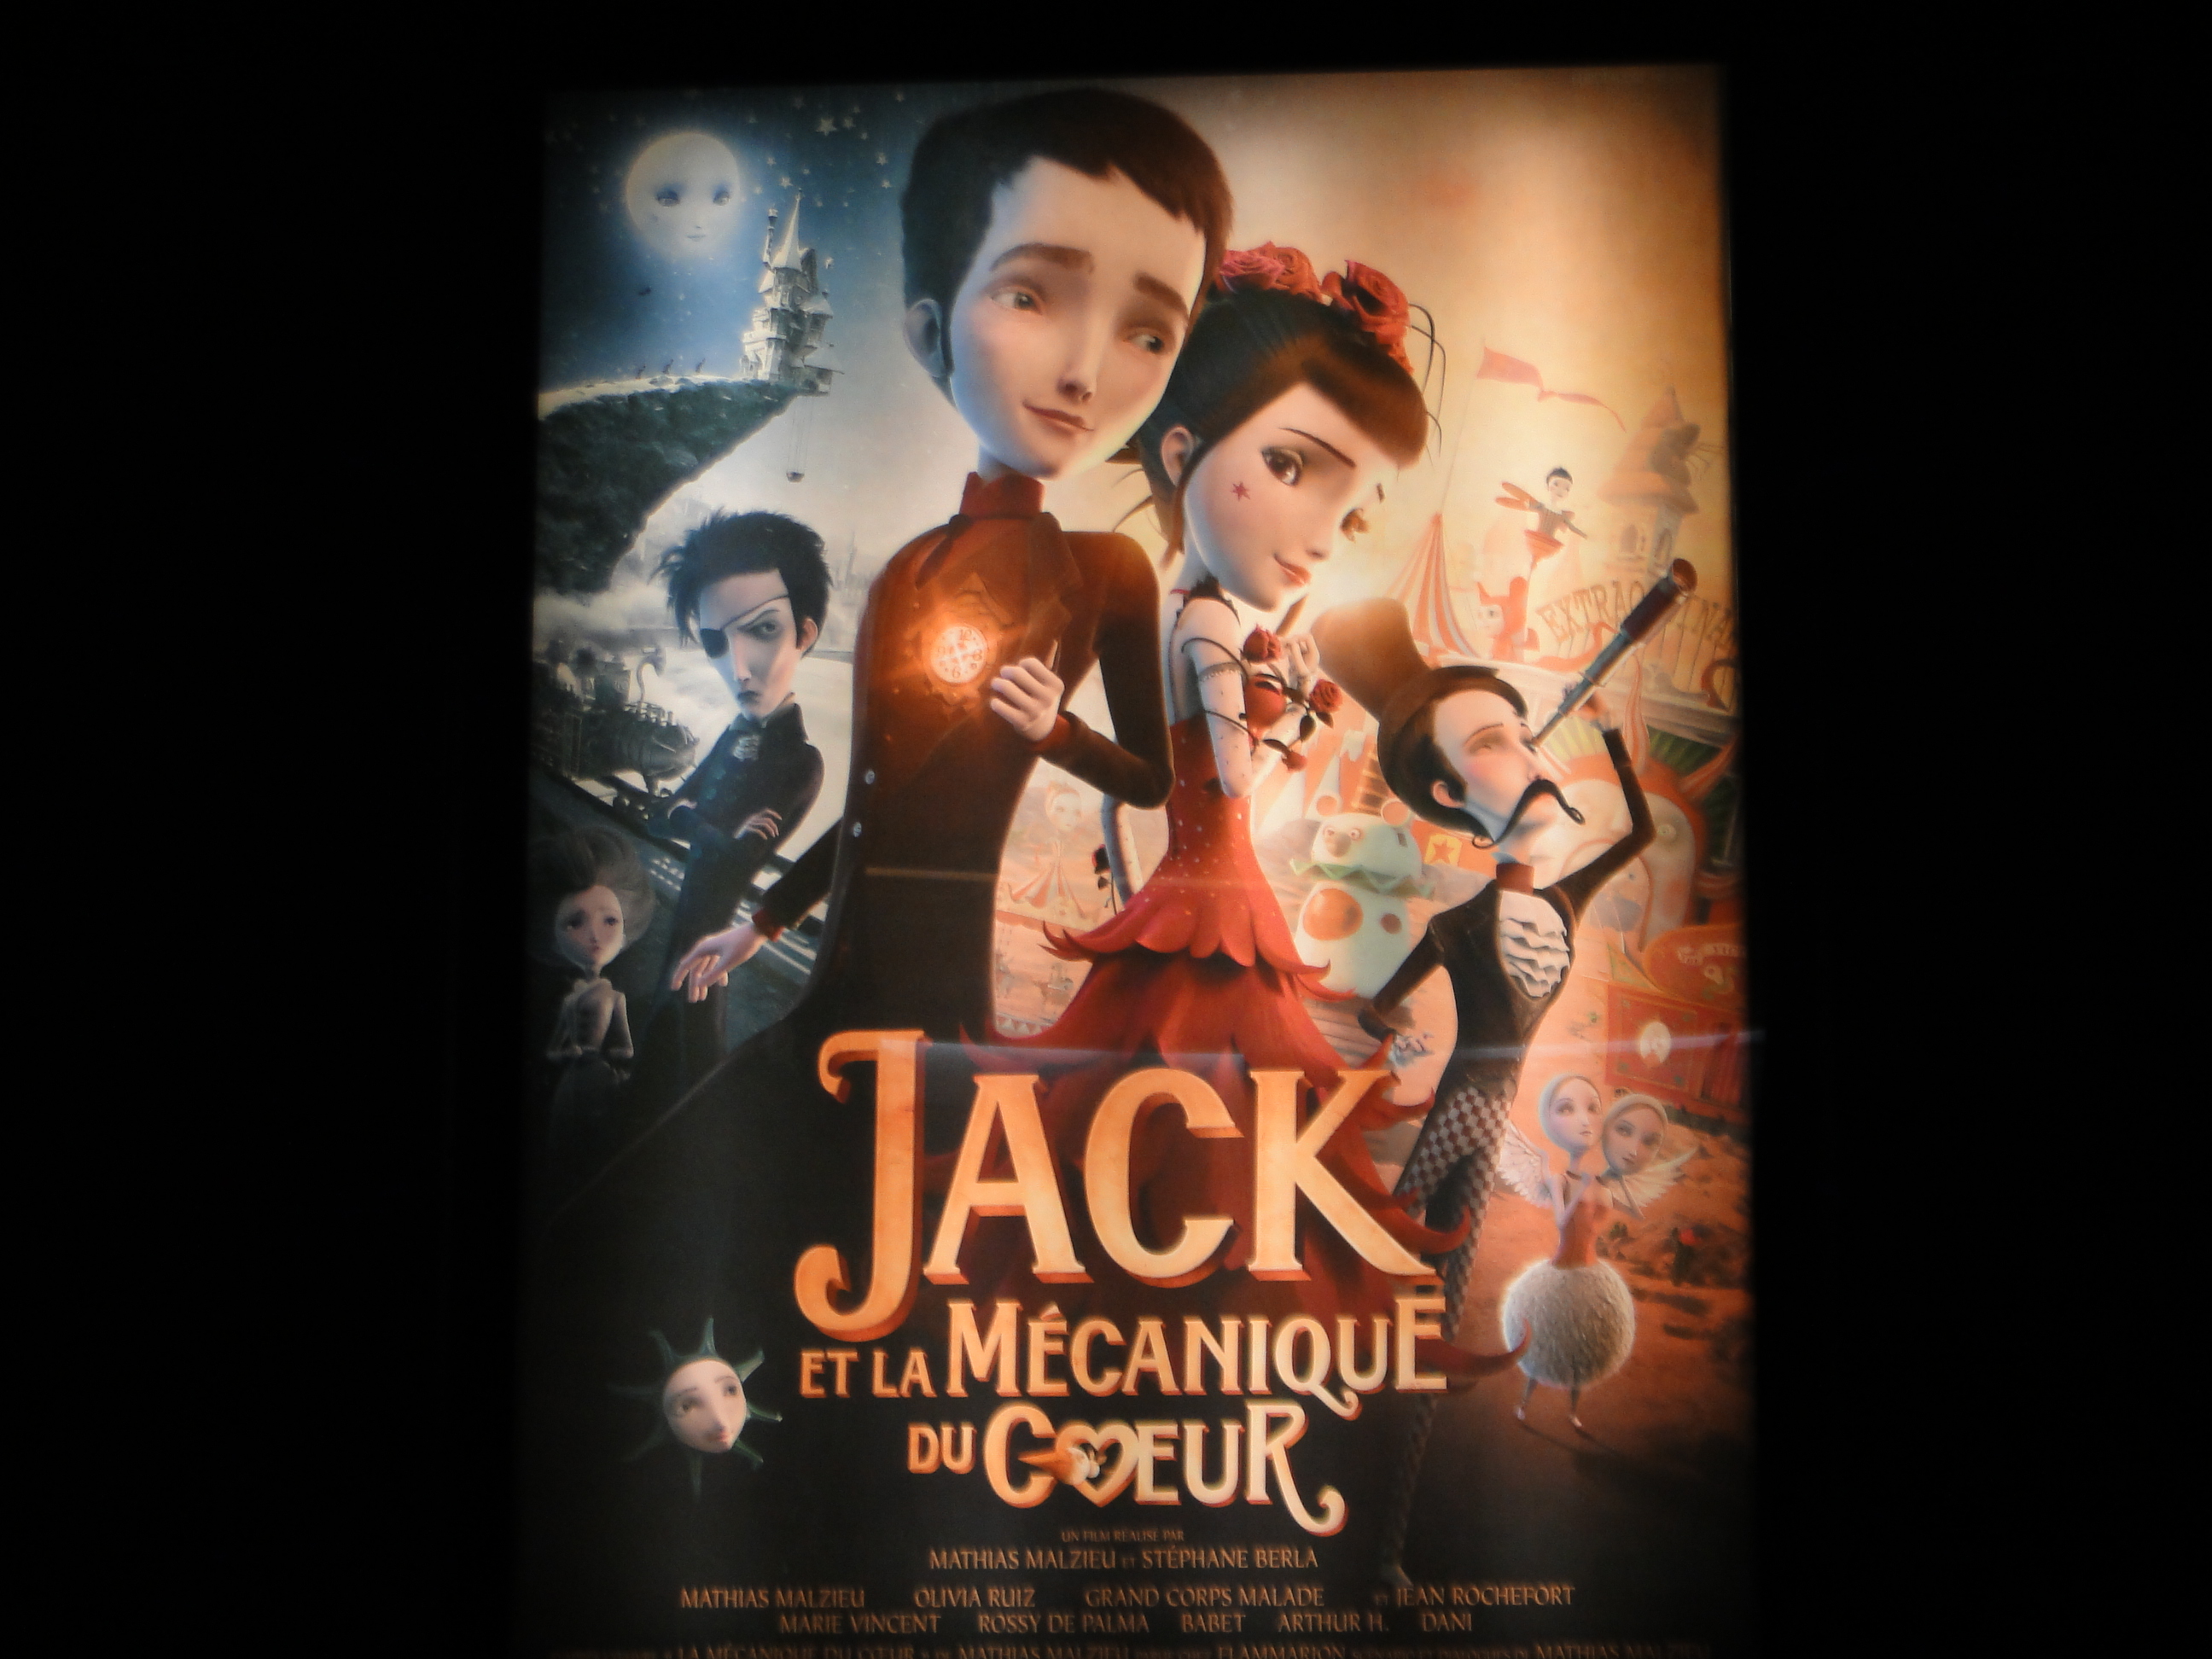 JACK ET LA MÉCANIQUE DU CŒUR - rencontre par Go with the Blog